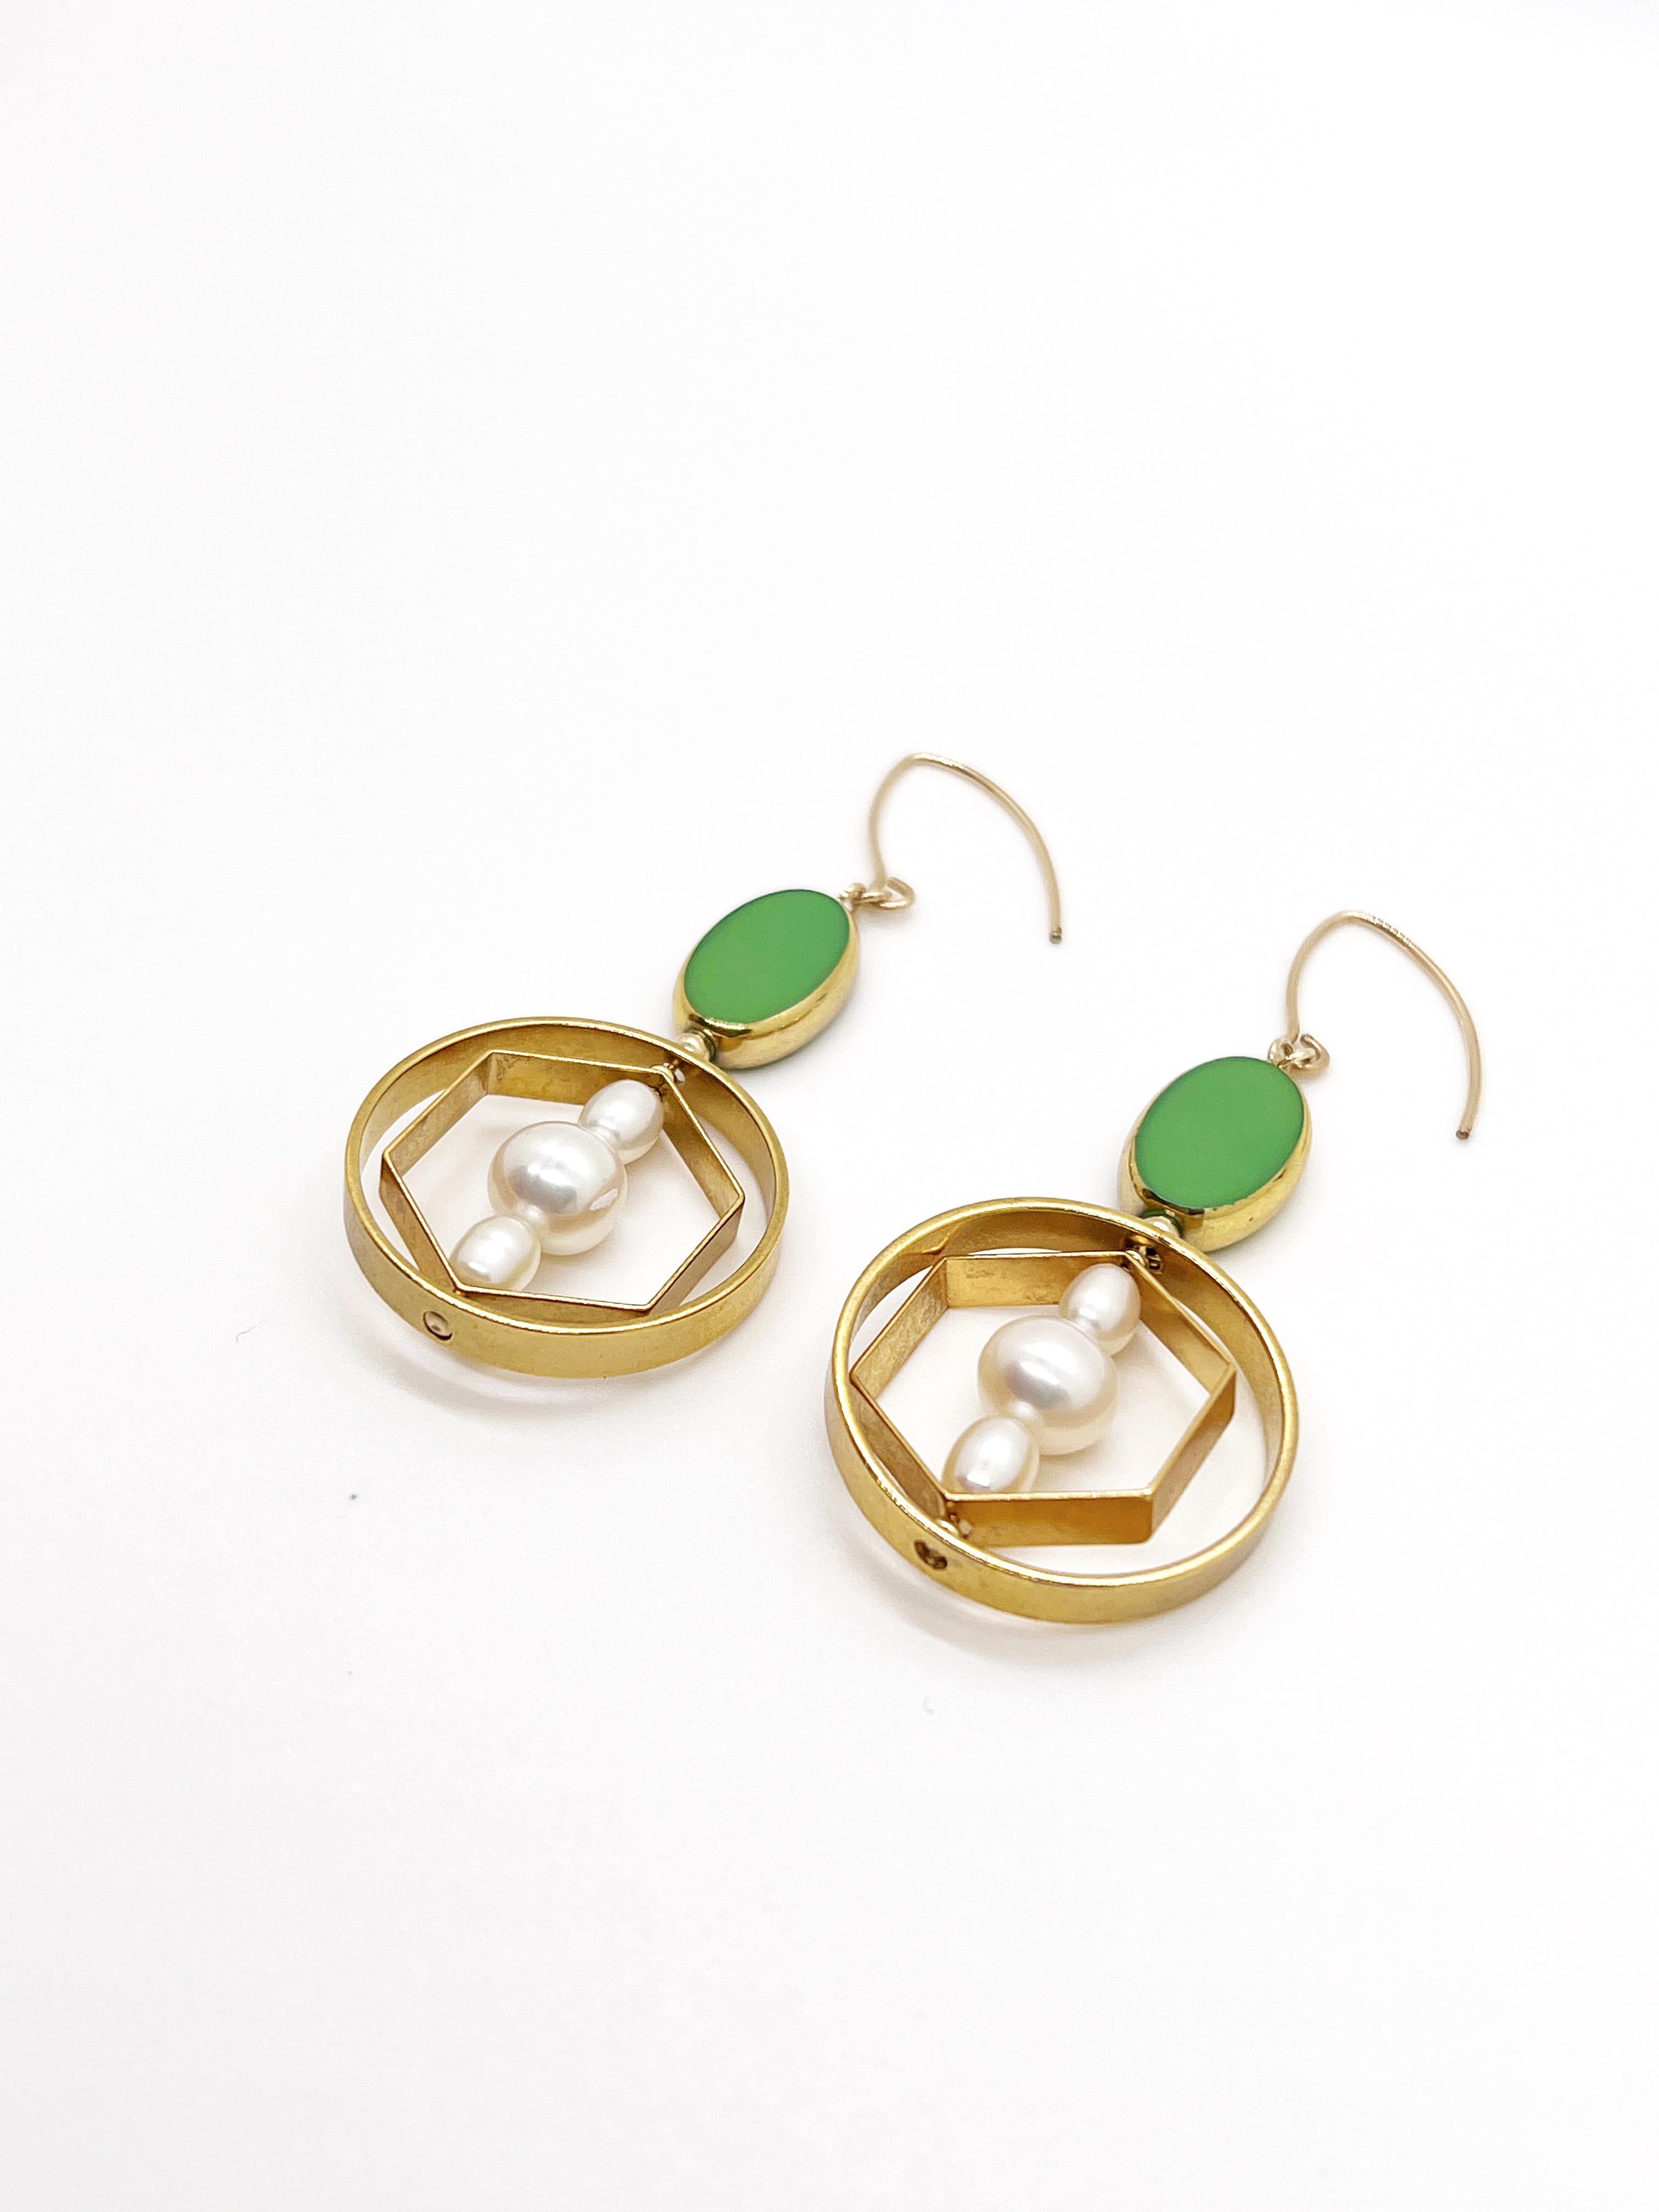 Ces boucles d'oreilles sont légères. Il est composé de l'ovale vert  Perles de verre vintage allemandes bordées d'or 24K. Il est composé de perles d'eau douce ovales serties dans une monture géométrique en laiton plaqué or 24K. Les boucles